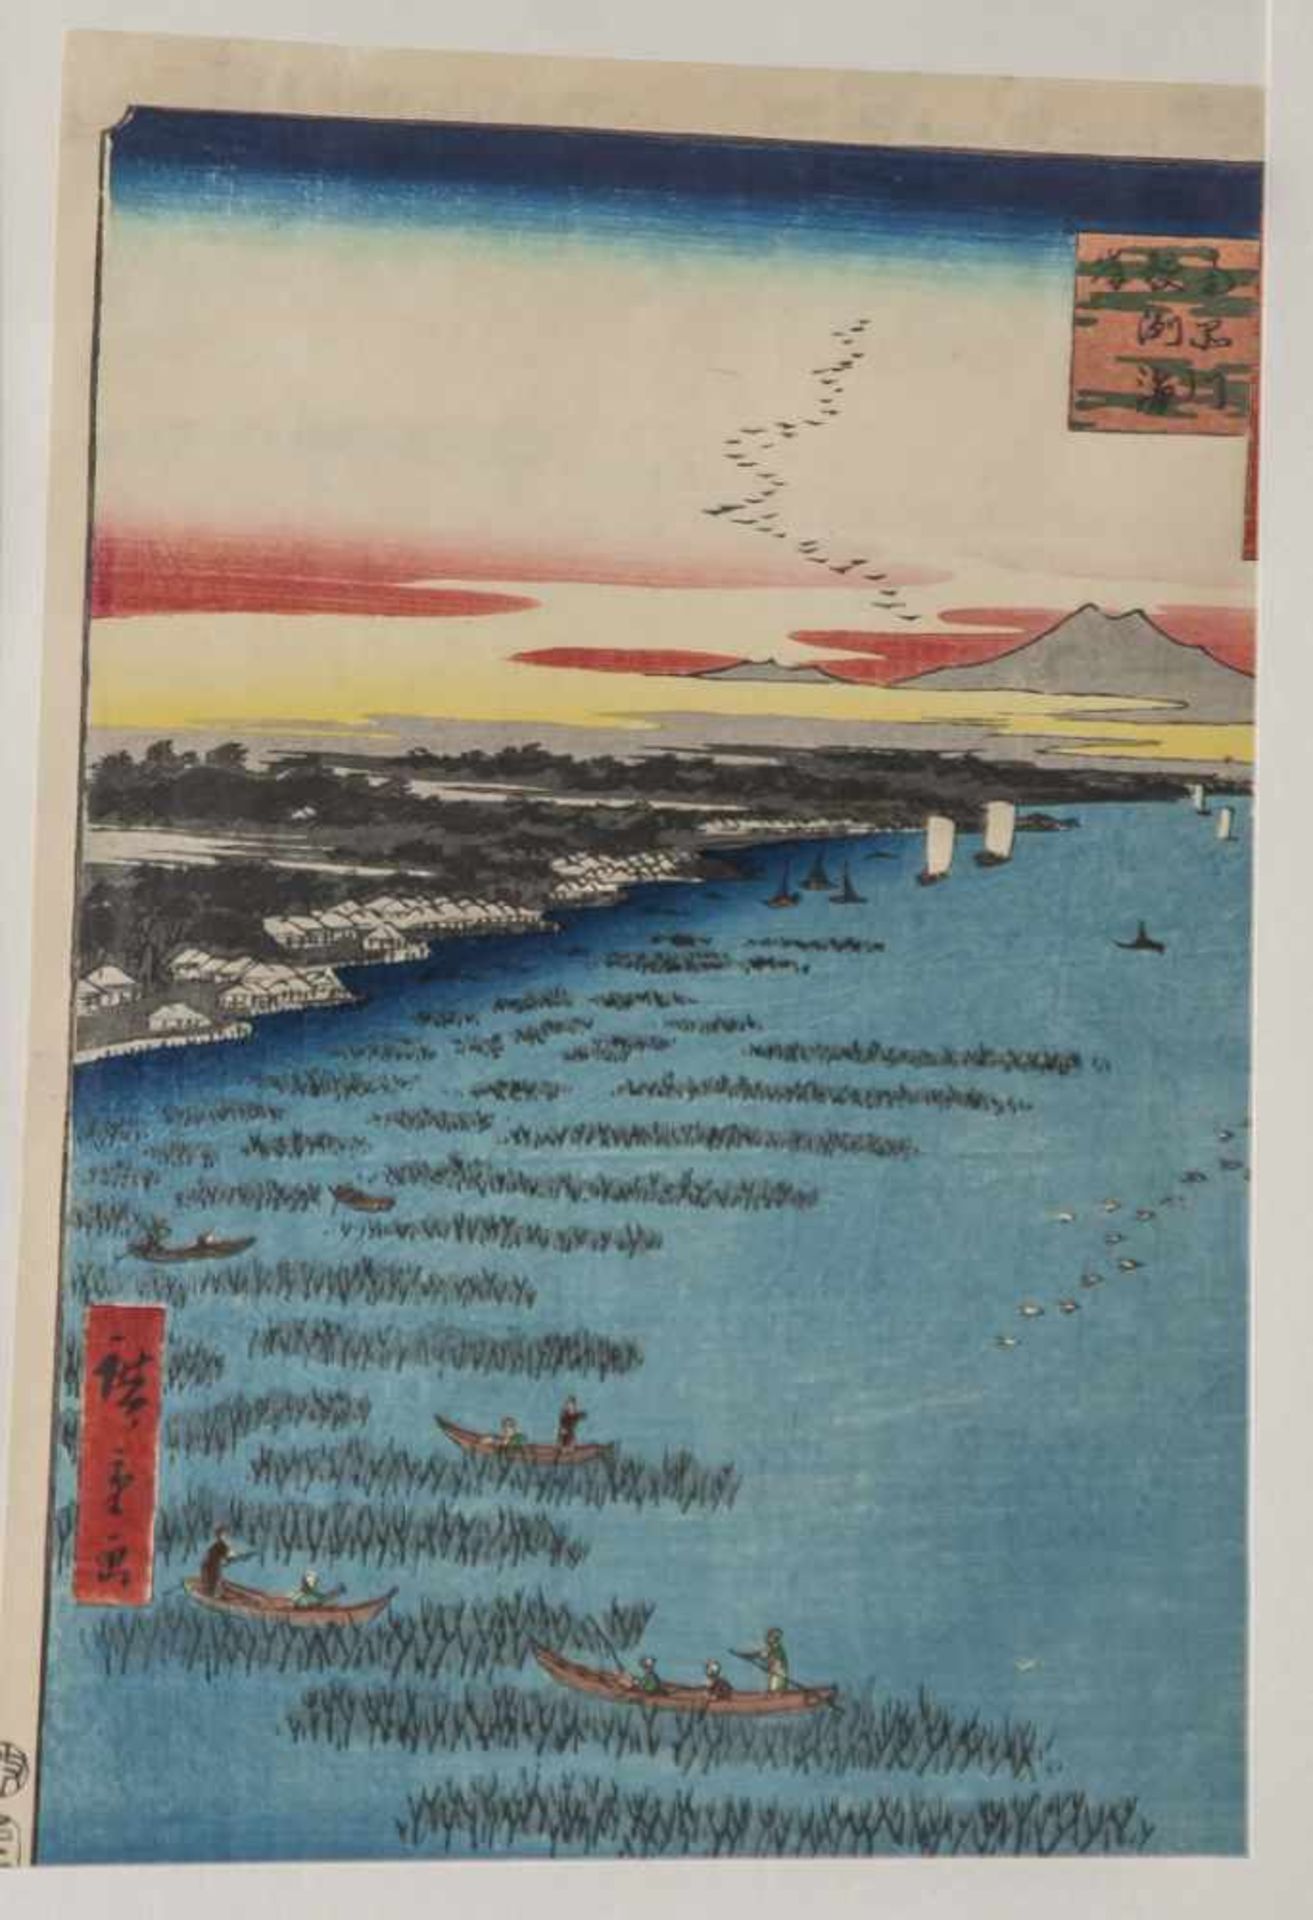 Hiroshige, Ando (1797-1858), Farbholzschnitt, Samezu, Seeufer von Shinagawa, aus: 100 Ansichten